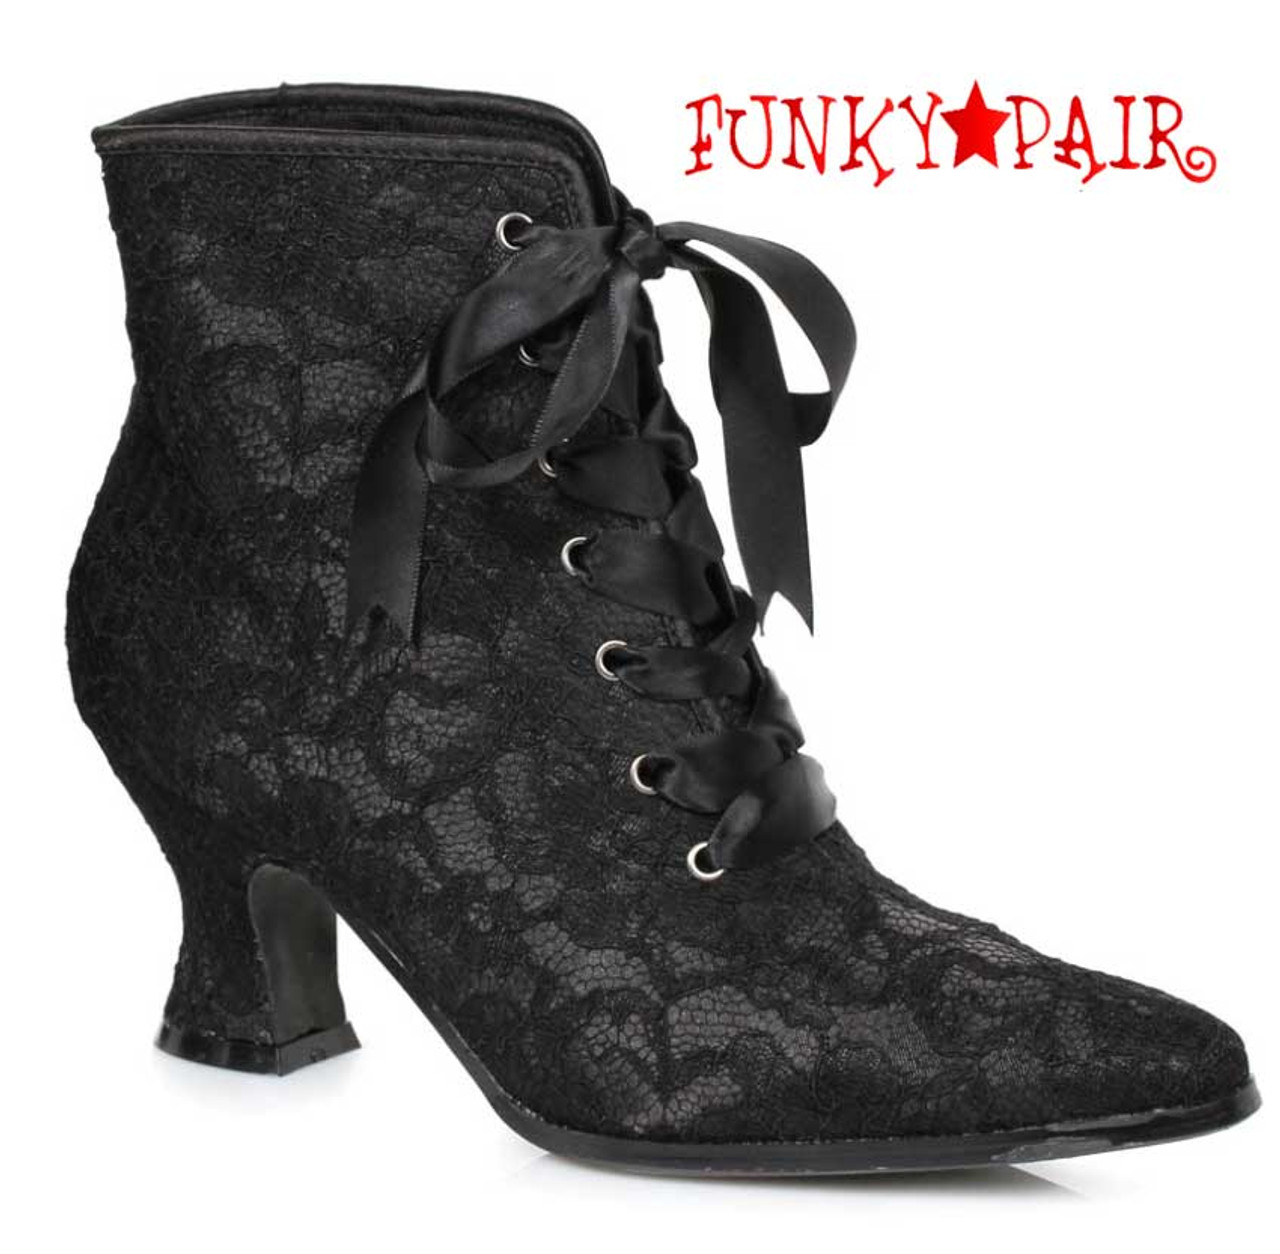 black booties 2.5 inch heel